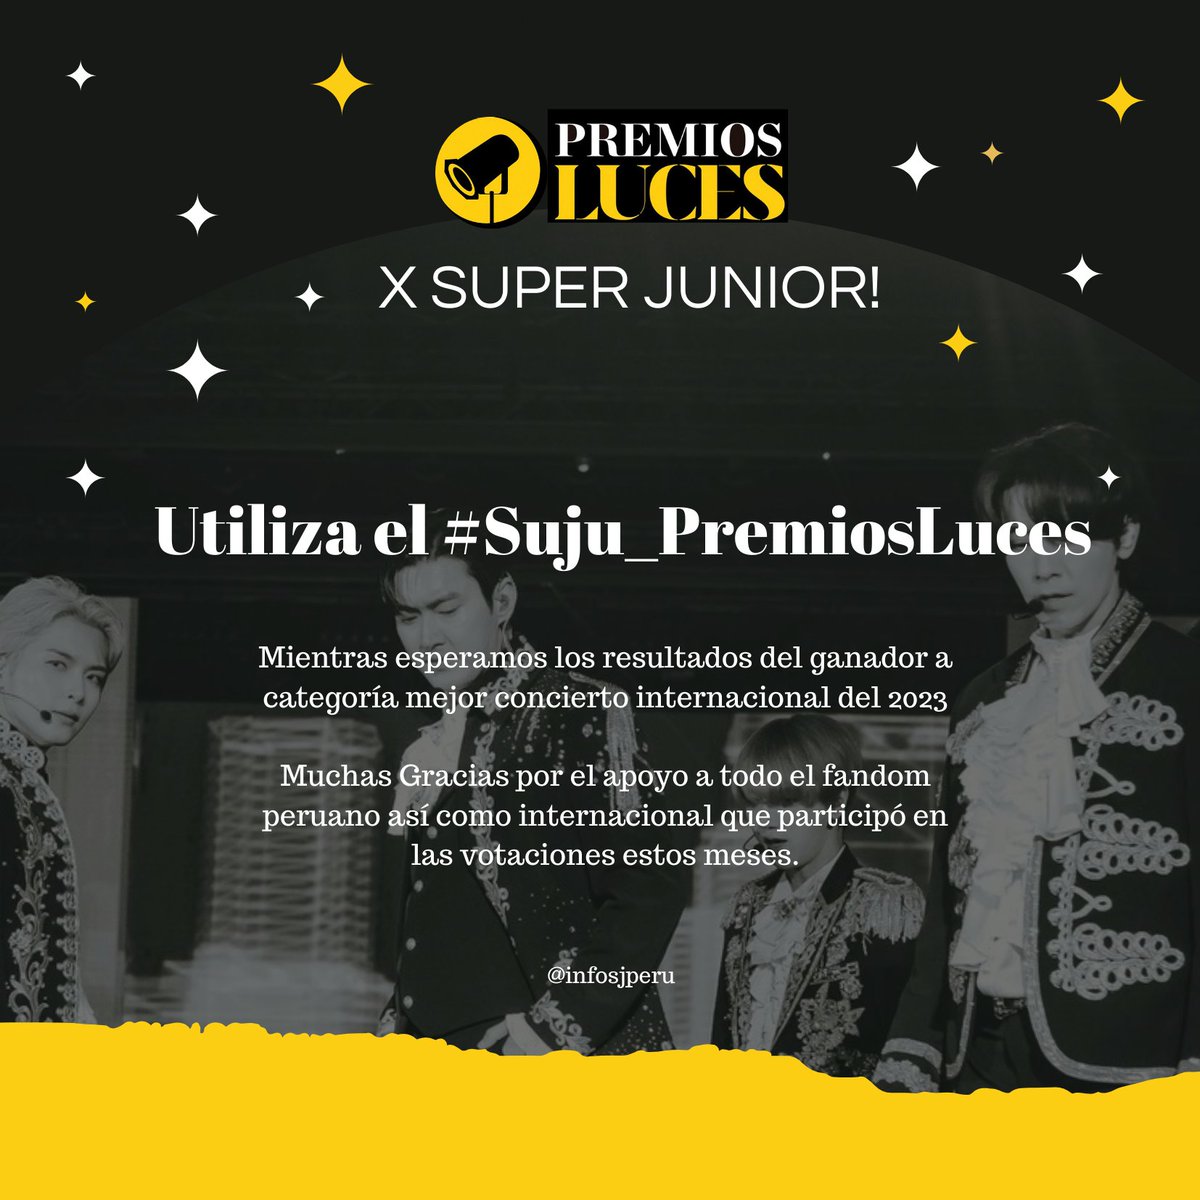 HOY salen los resultados para todas las categorías de los Premios Luces de El Comercio

#SuperJunior está nominado como Mejor Concierto Internacional del 2023🙌, la premiación se realizará a desde las 7:30pm🇵🇪

Te invitamos a usar los: #Suju_PremiosLuces #PremiosLuces2023